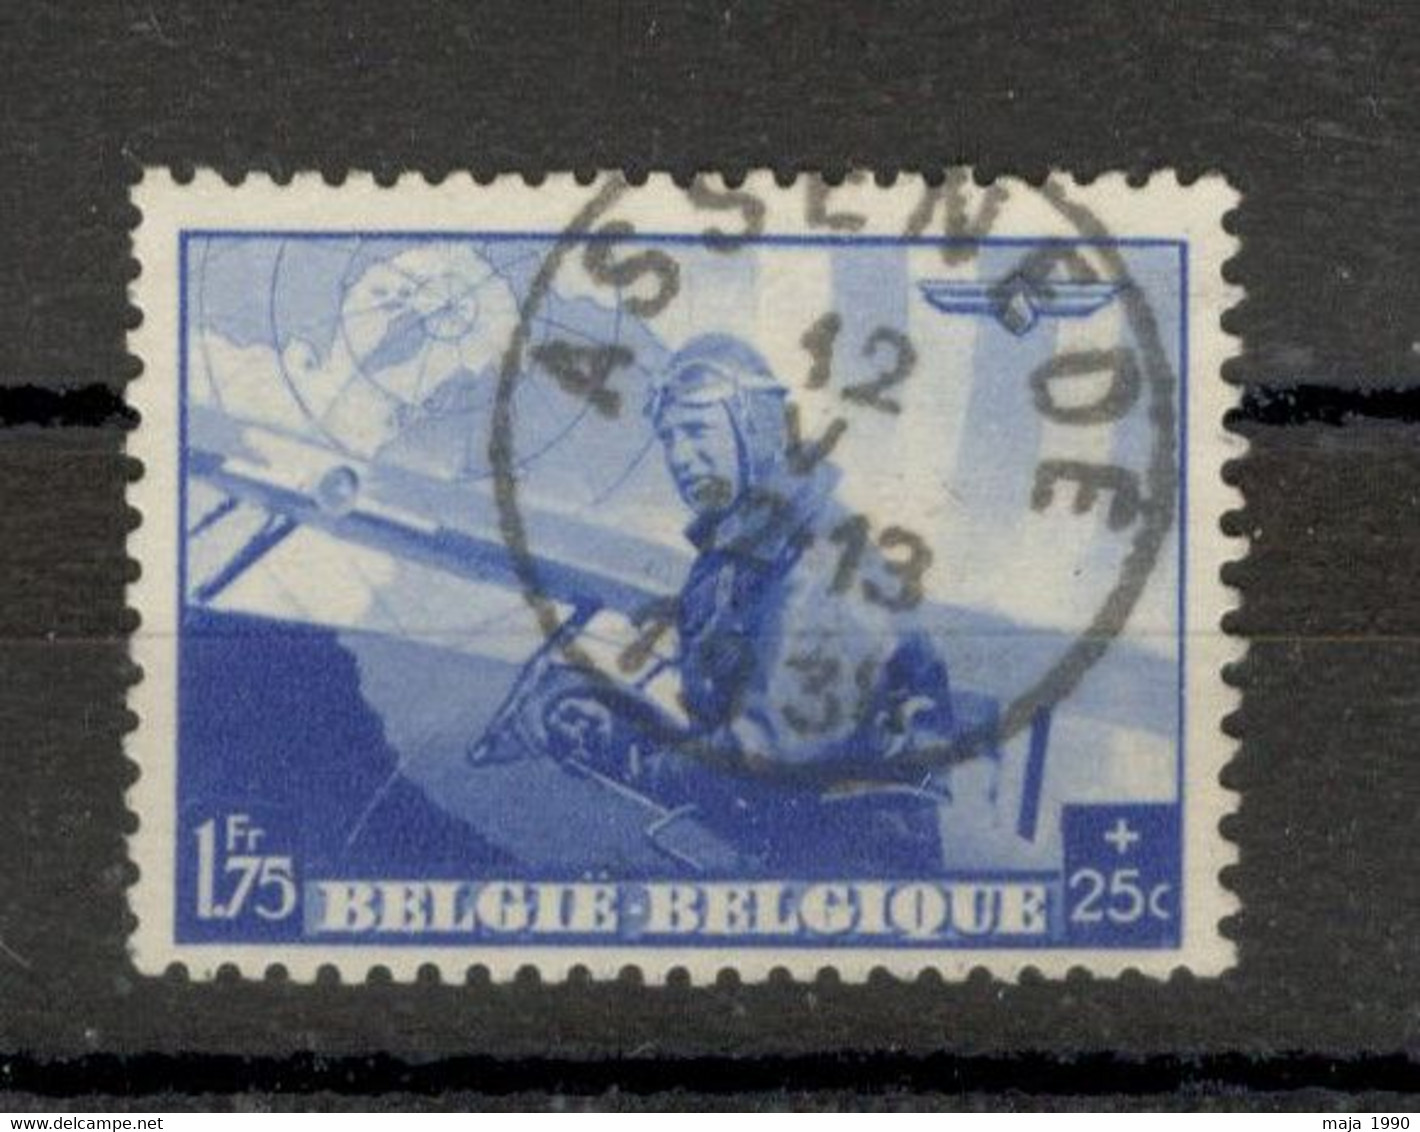 BELGIUM USED AIRMAIL STAMP - Mi.No. 469 - 1938. - 1929-1941 Big Montenez